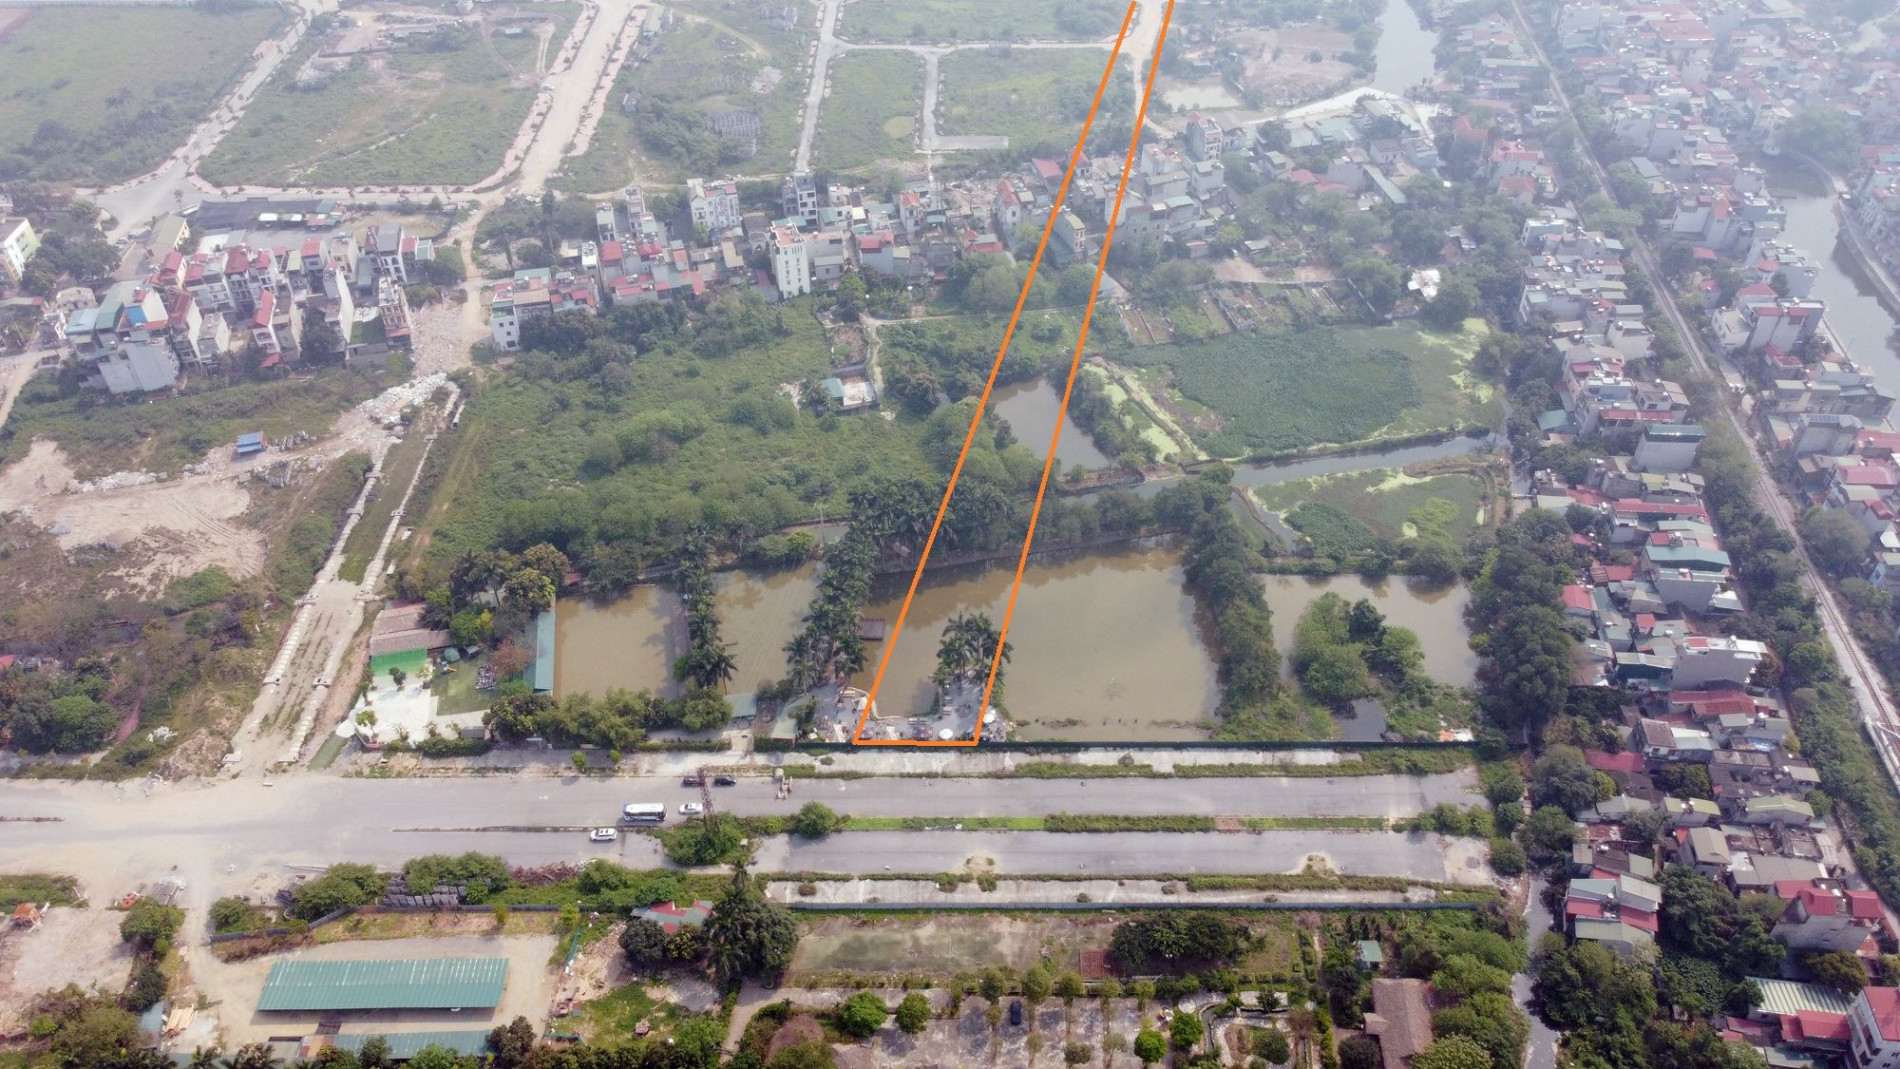 Sắp lấp nhiều hồ để làm nhà, làm đường ở phường Ngọc Thụy, Long Biên, Hà Nội